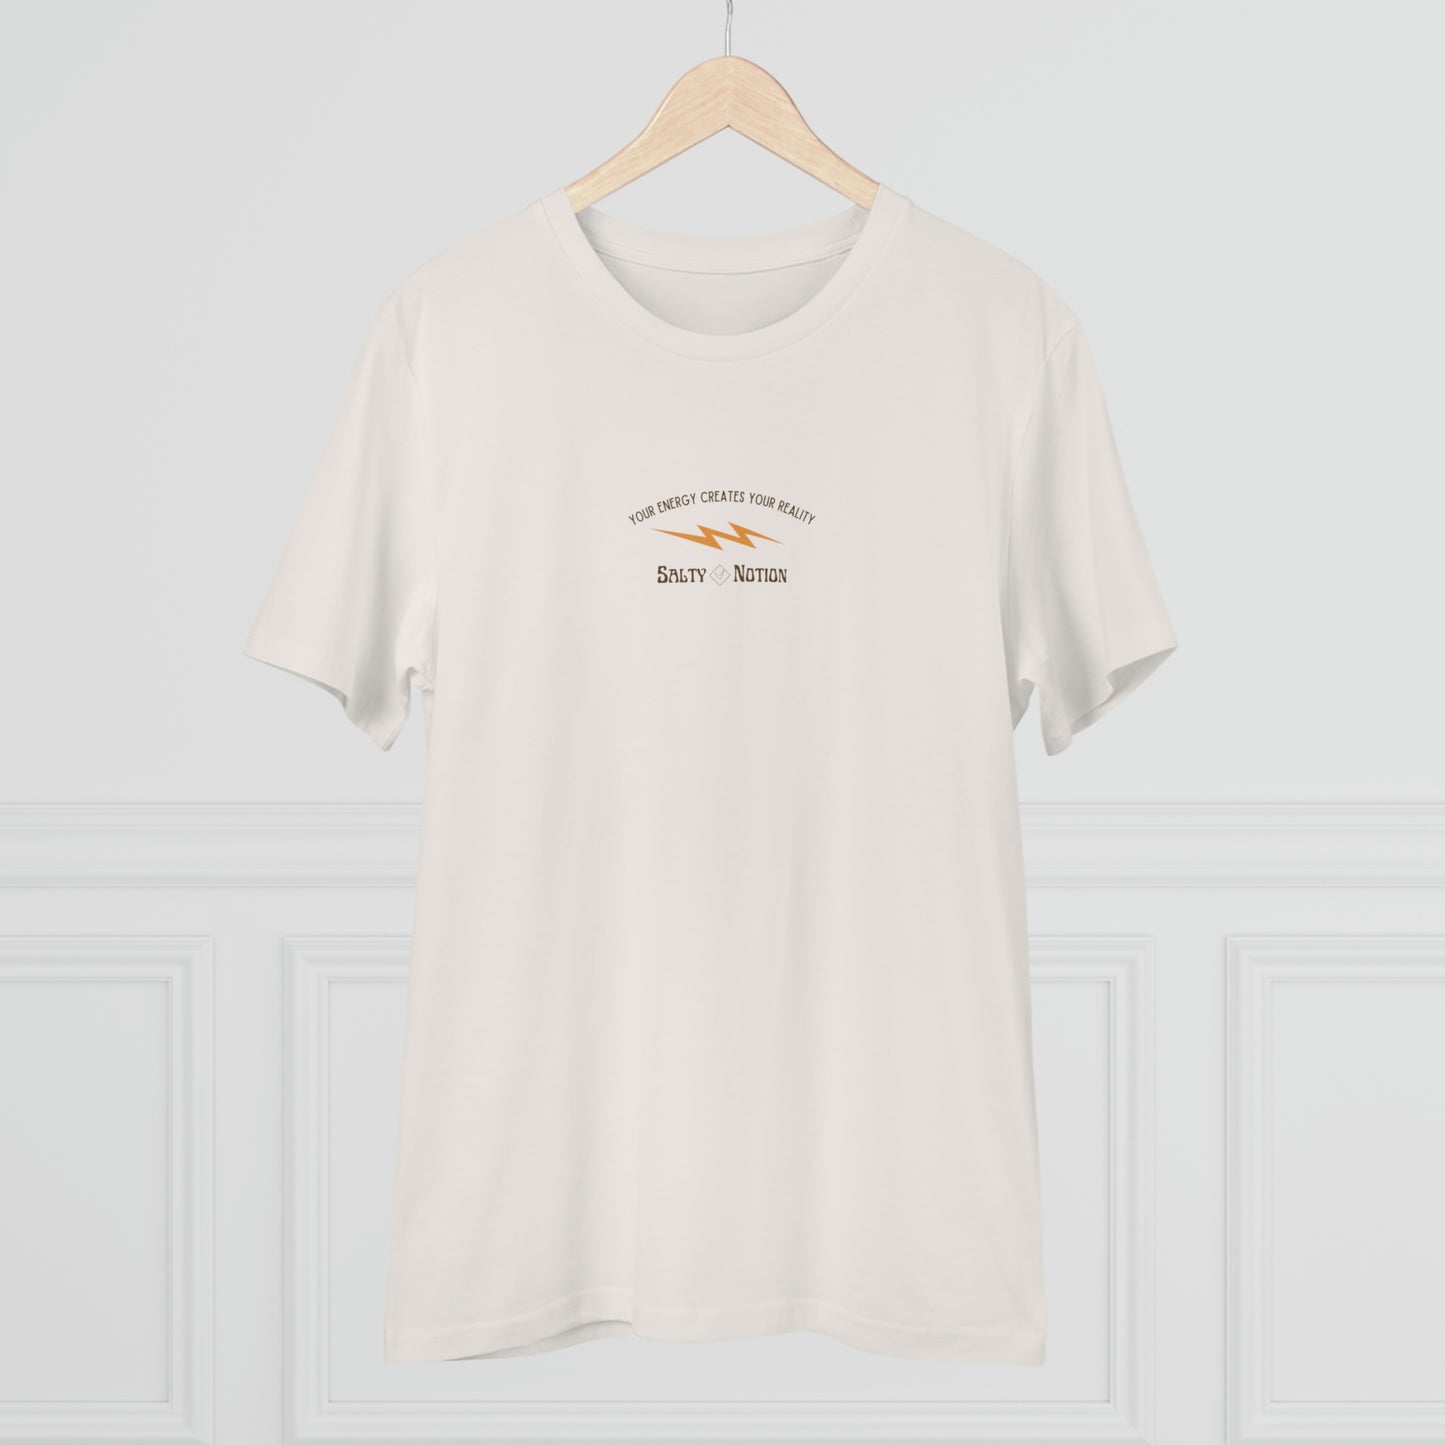 Organic ENERGY T-shirt Vintage White/Desert Dust - Unisex